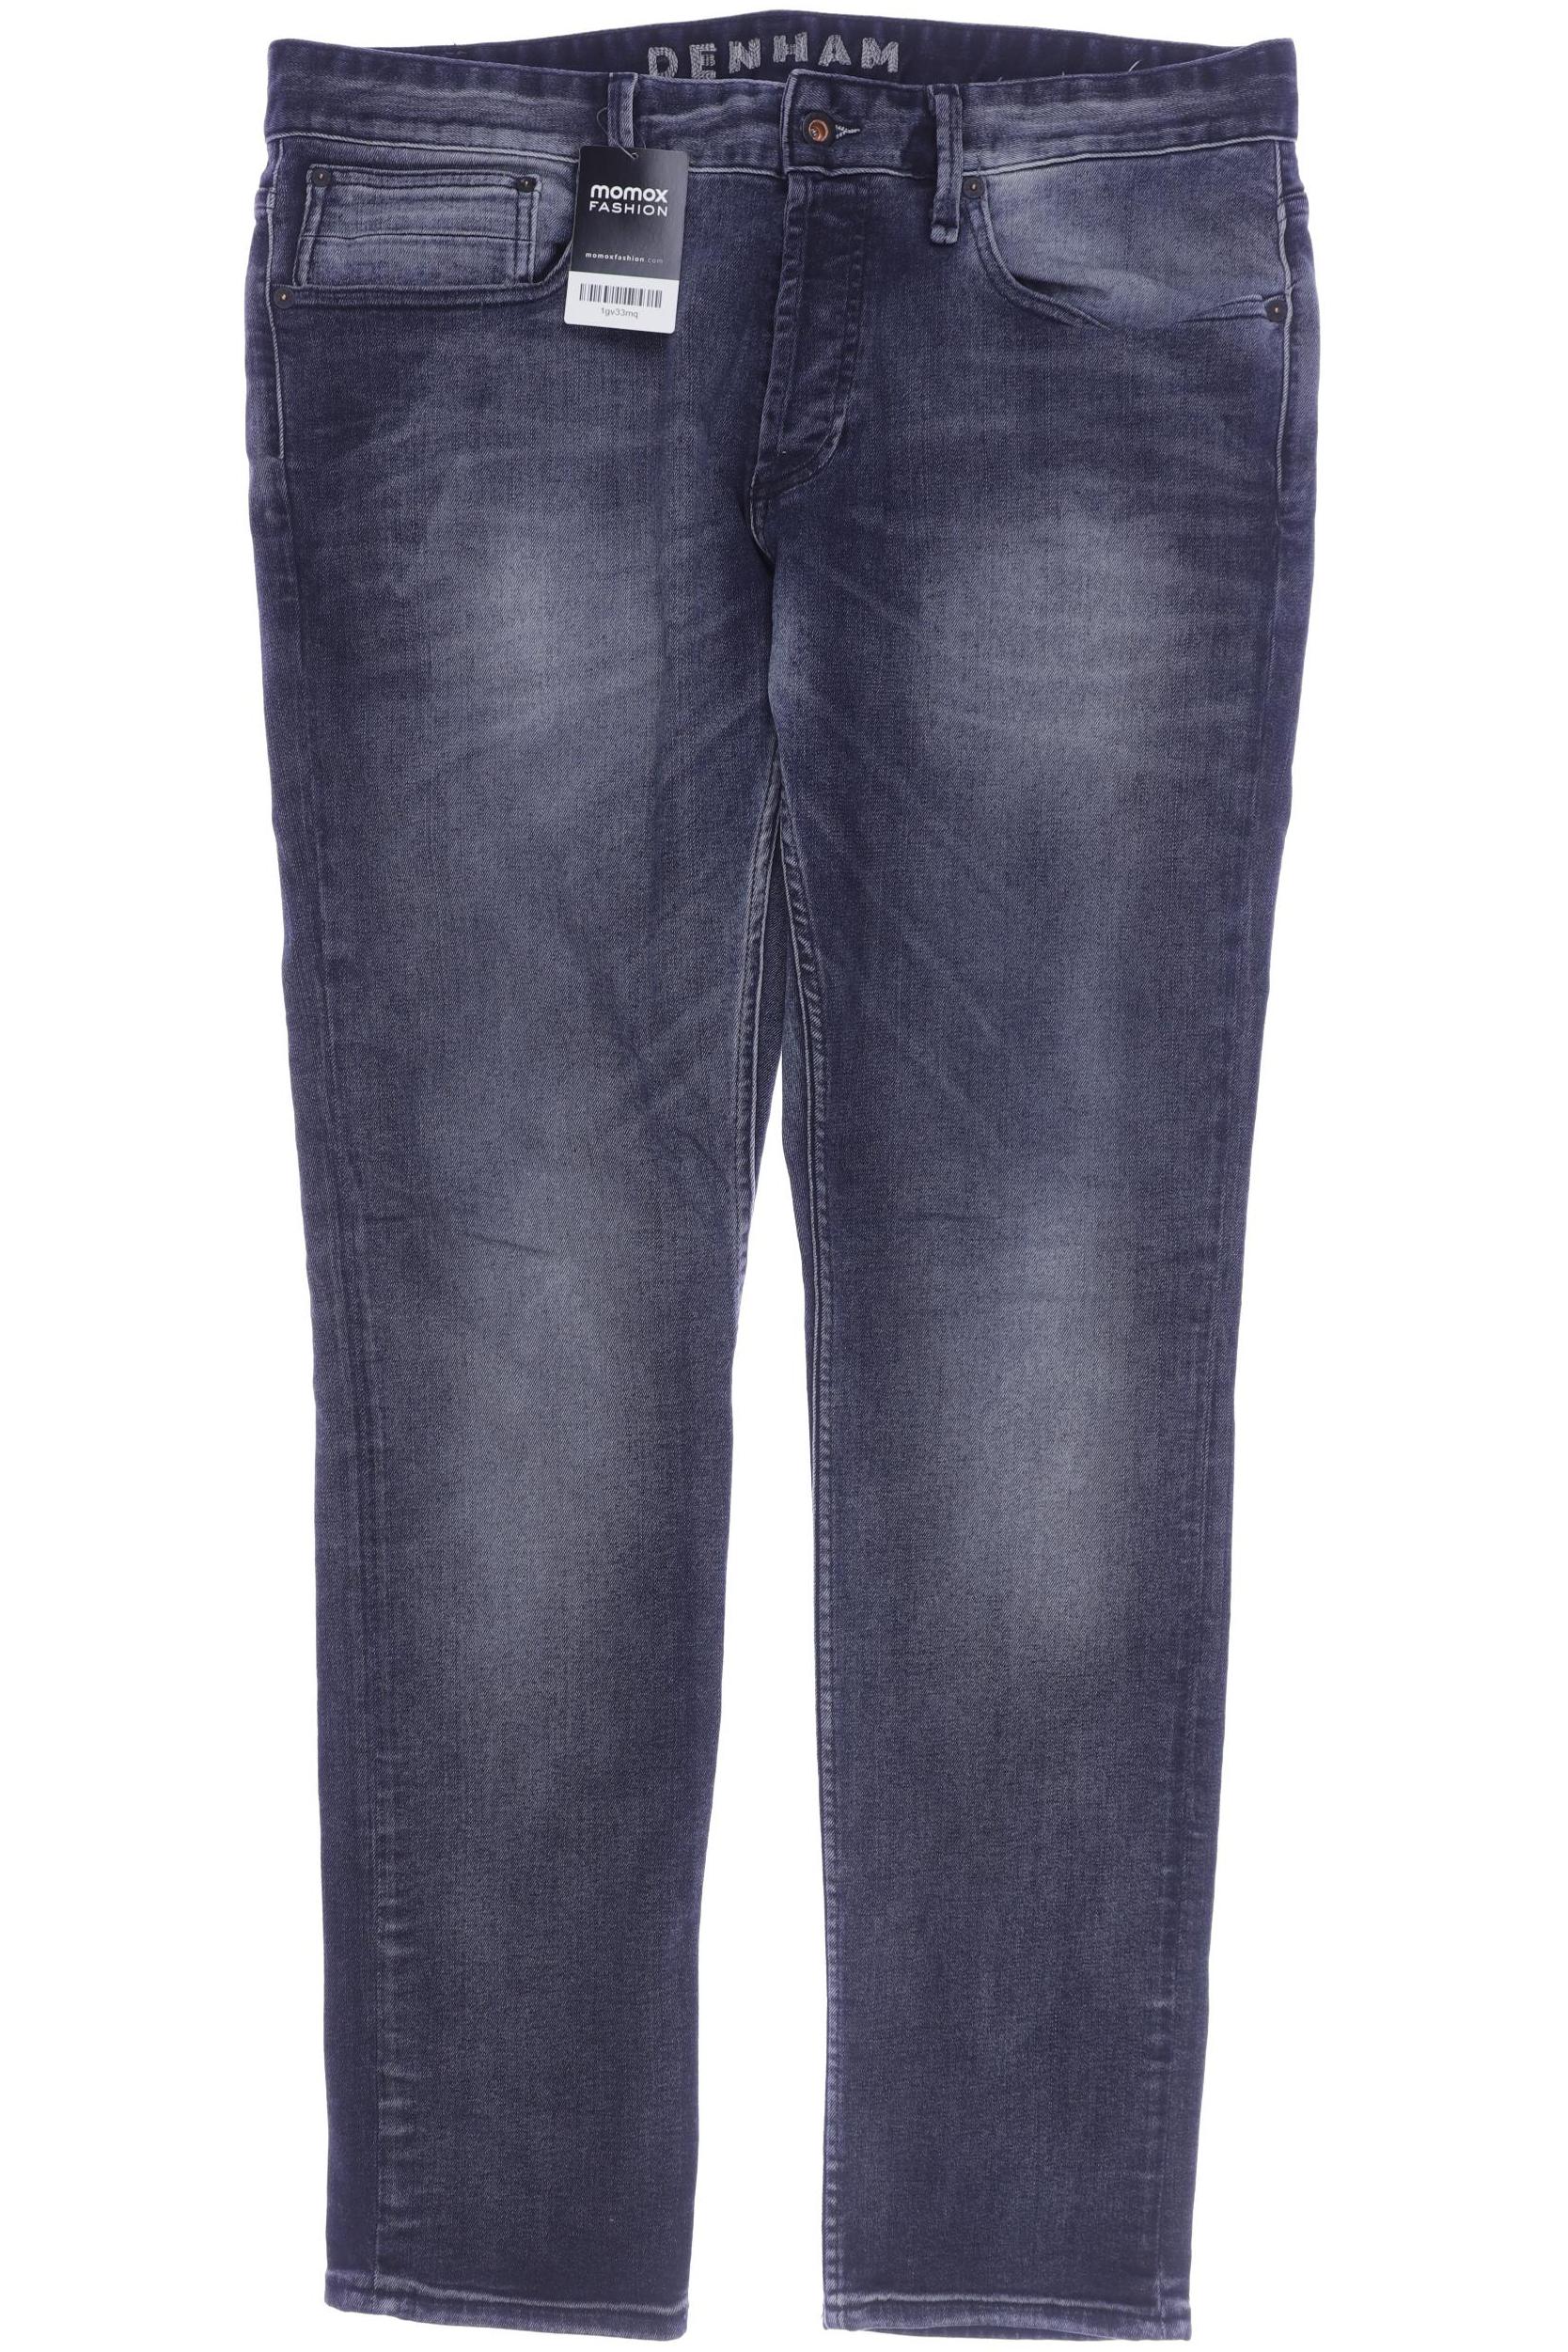 DENHAM Herren Jeans, marineblau von Denham